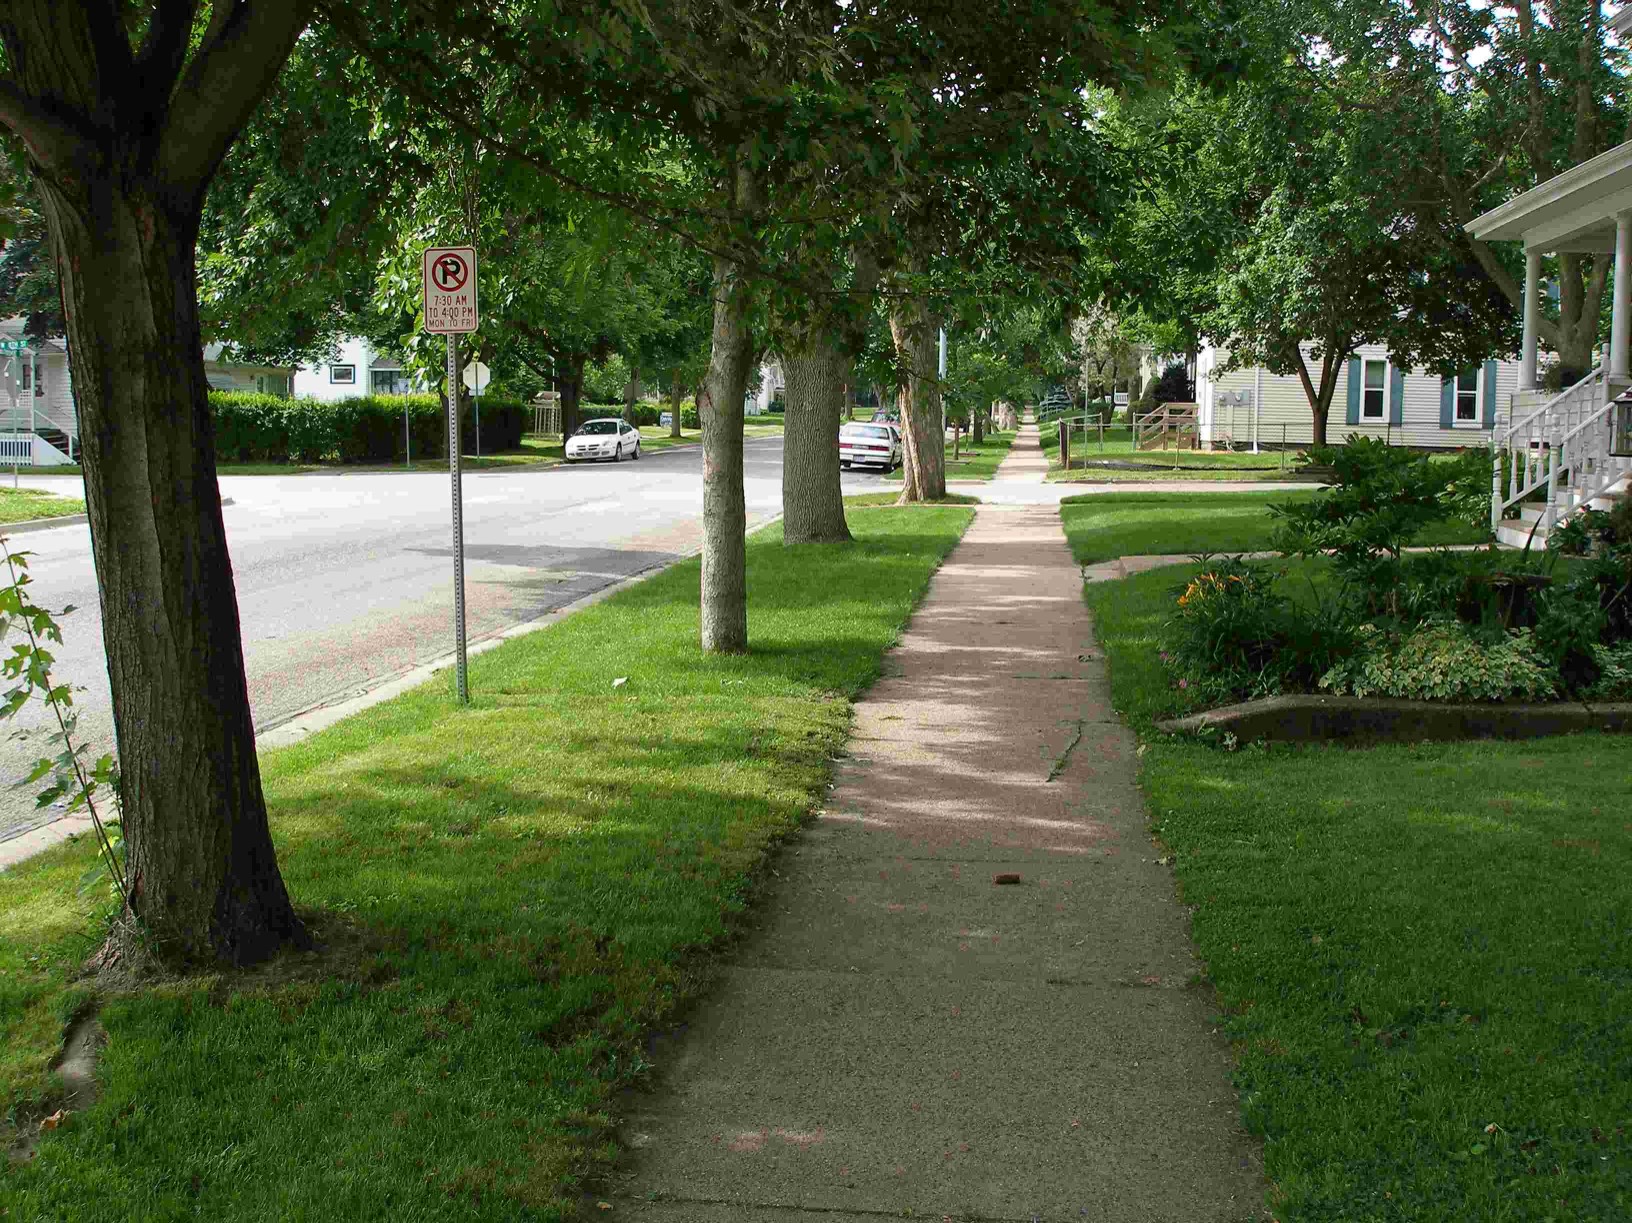 Neighborhood with trees